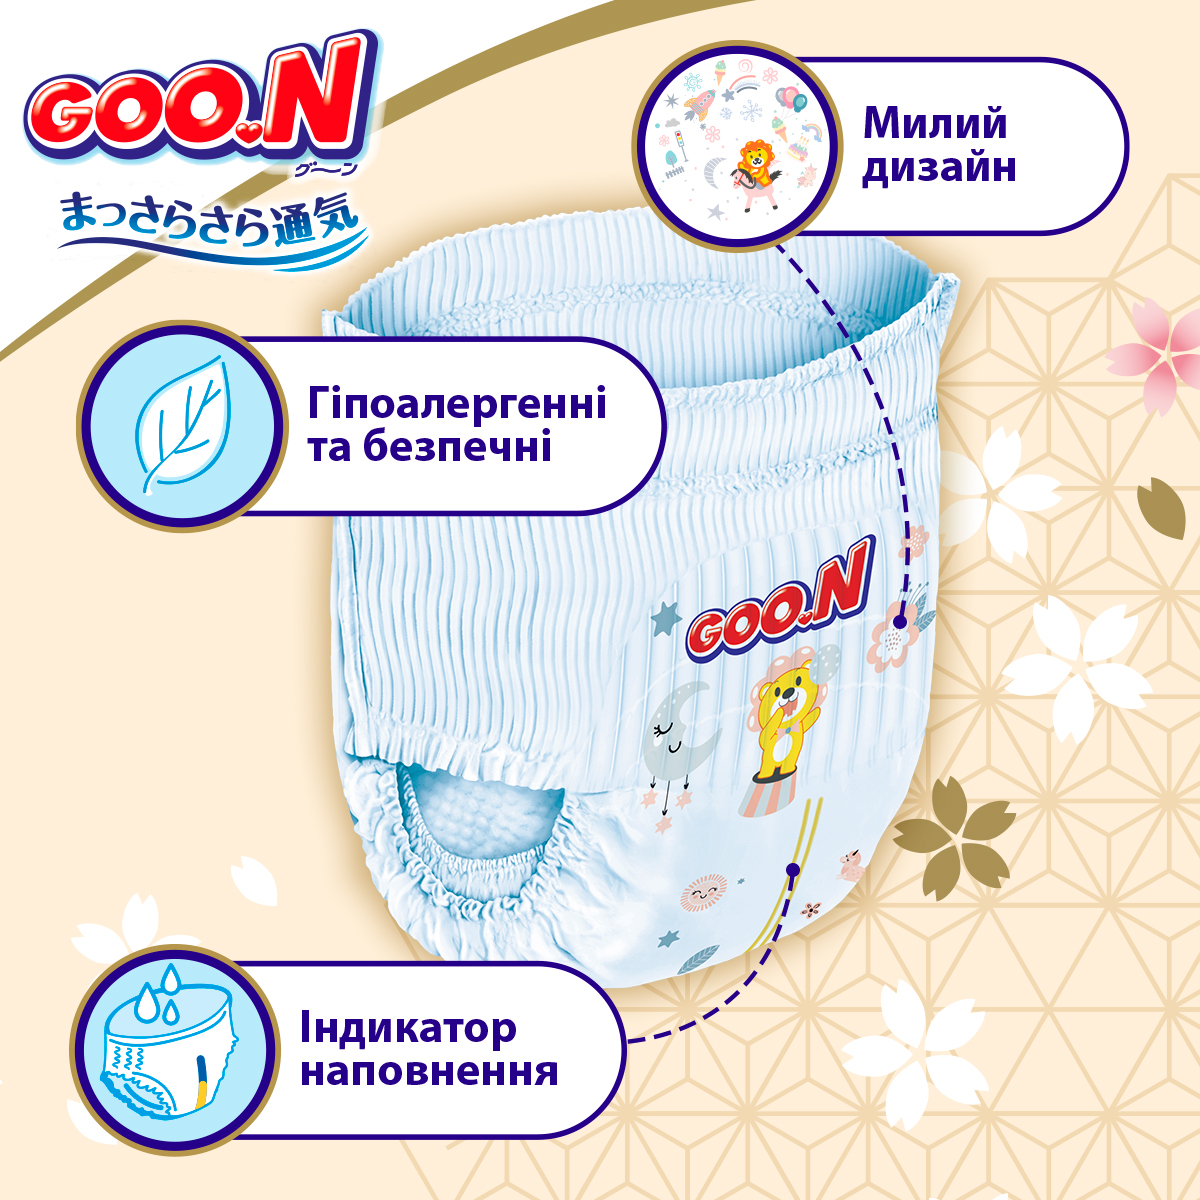 Трусики-підгузки Goo.N Premium Soft розмір 4(L) 9-14 кг доу-пак 88 шт. - фото 6